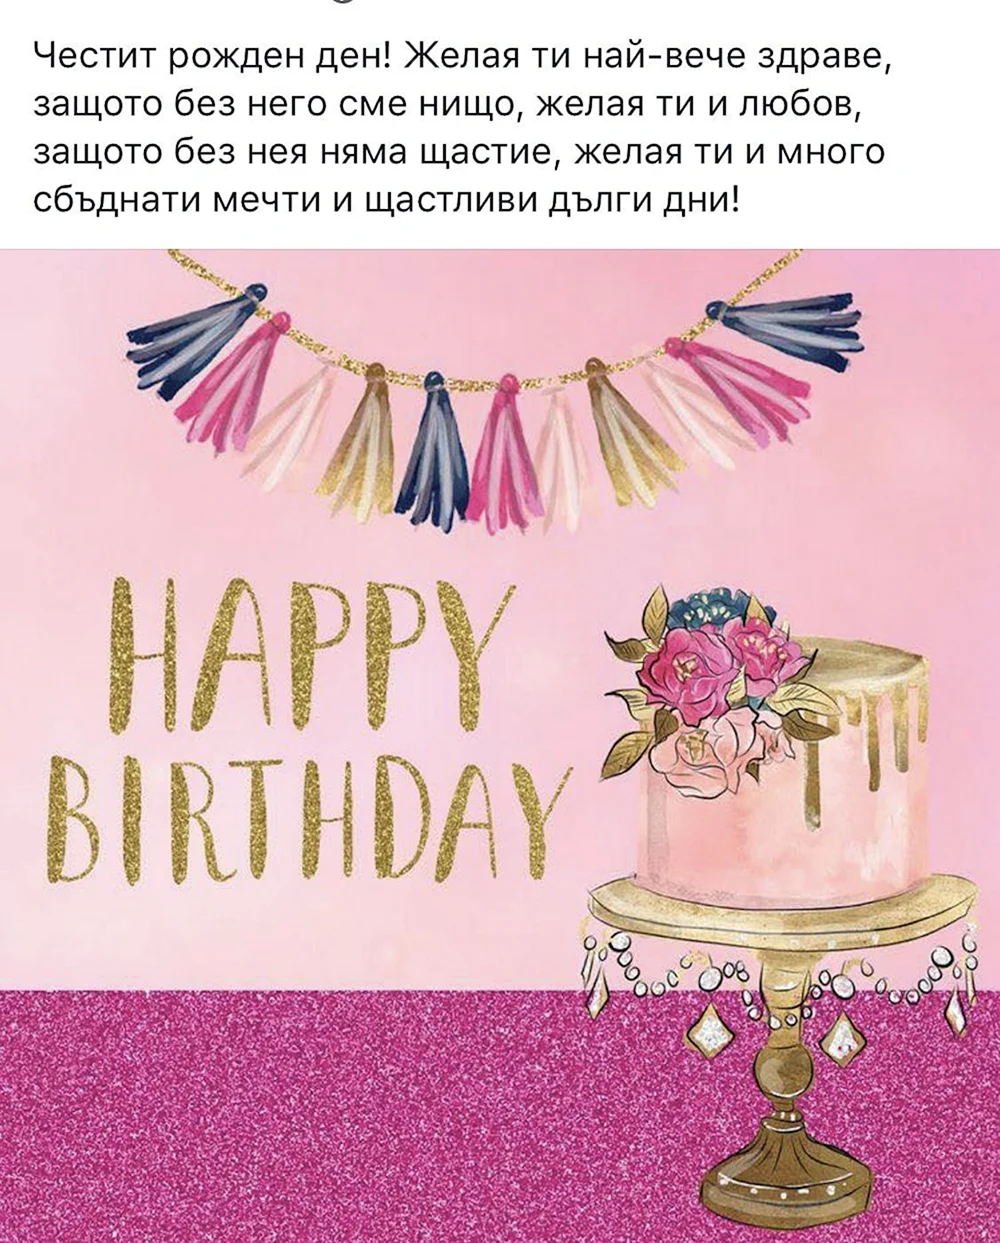 Happy Birthday Ирина